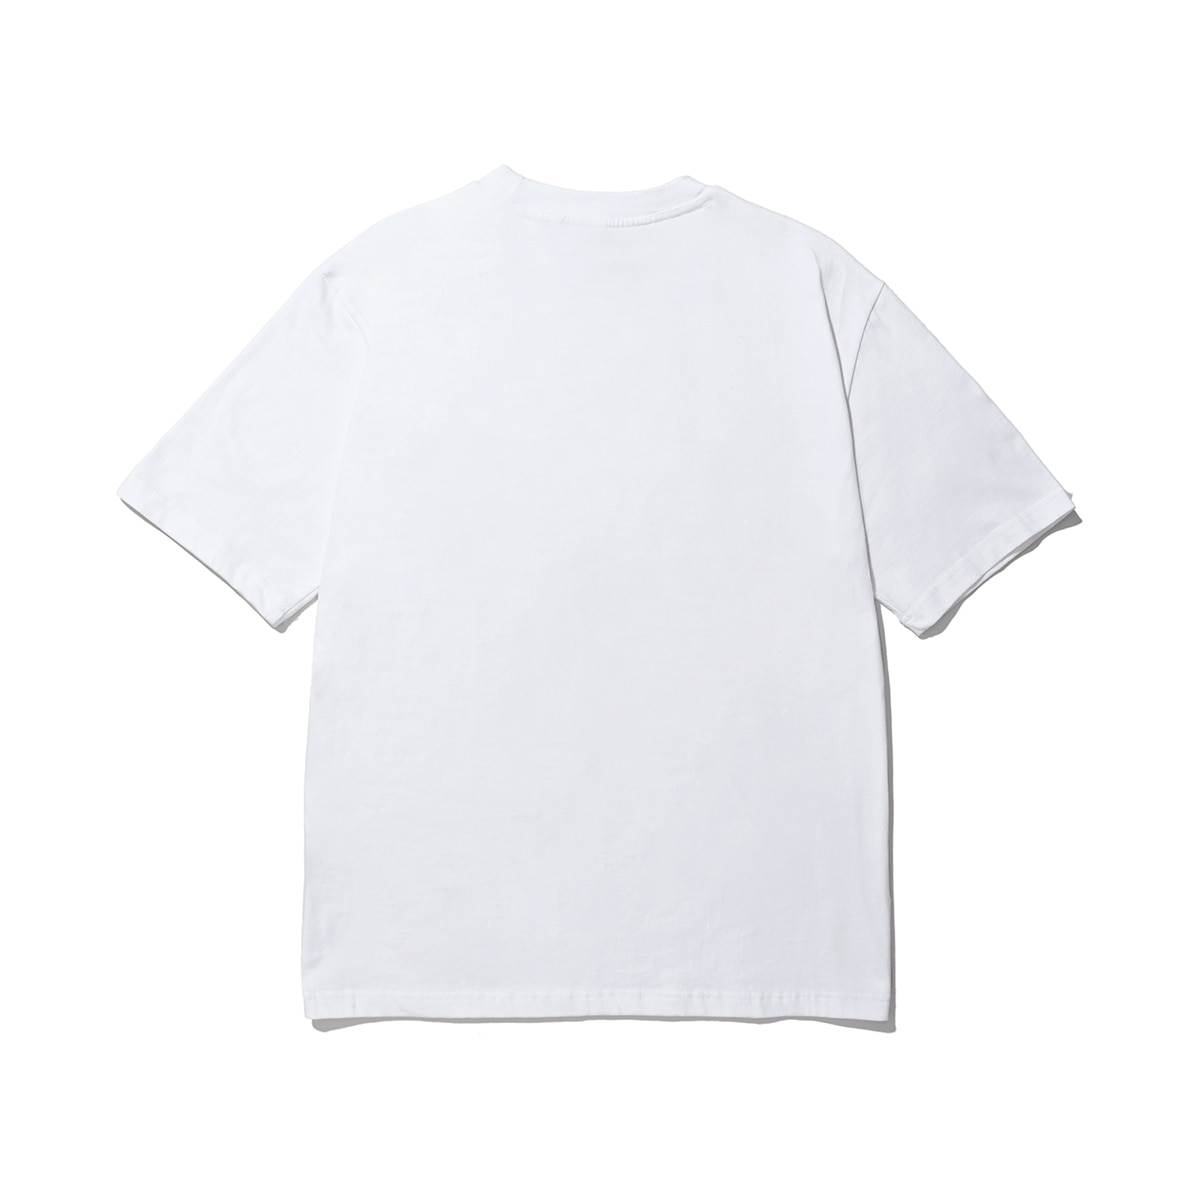 Astromobile T-shirt (white)